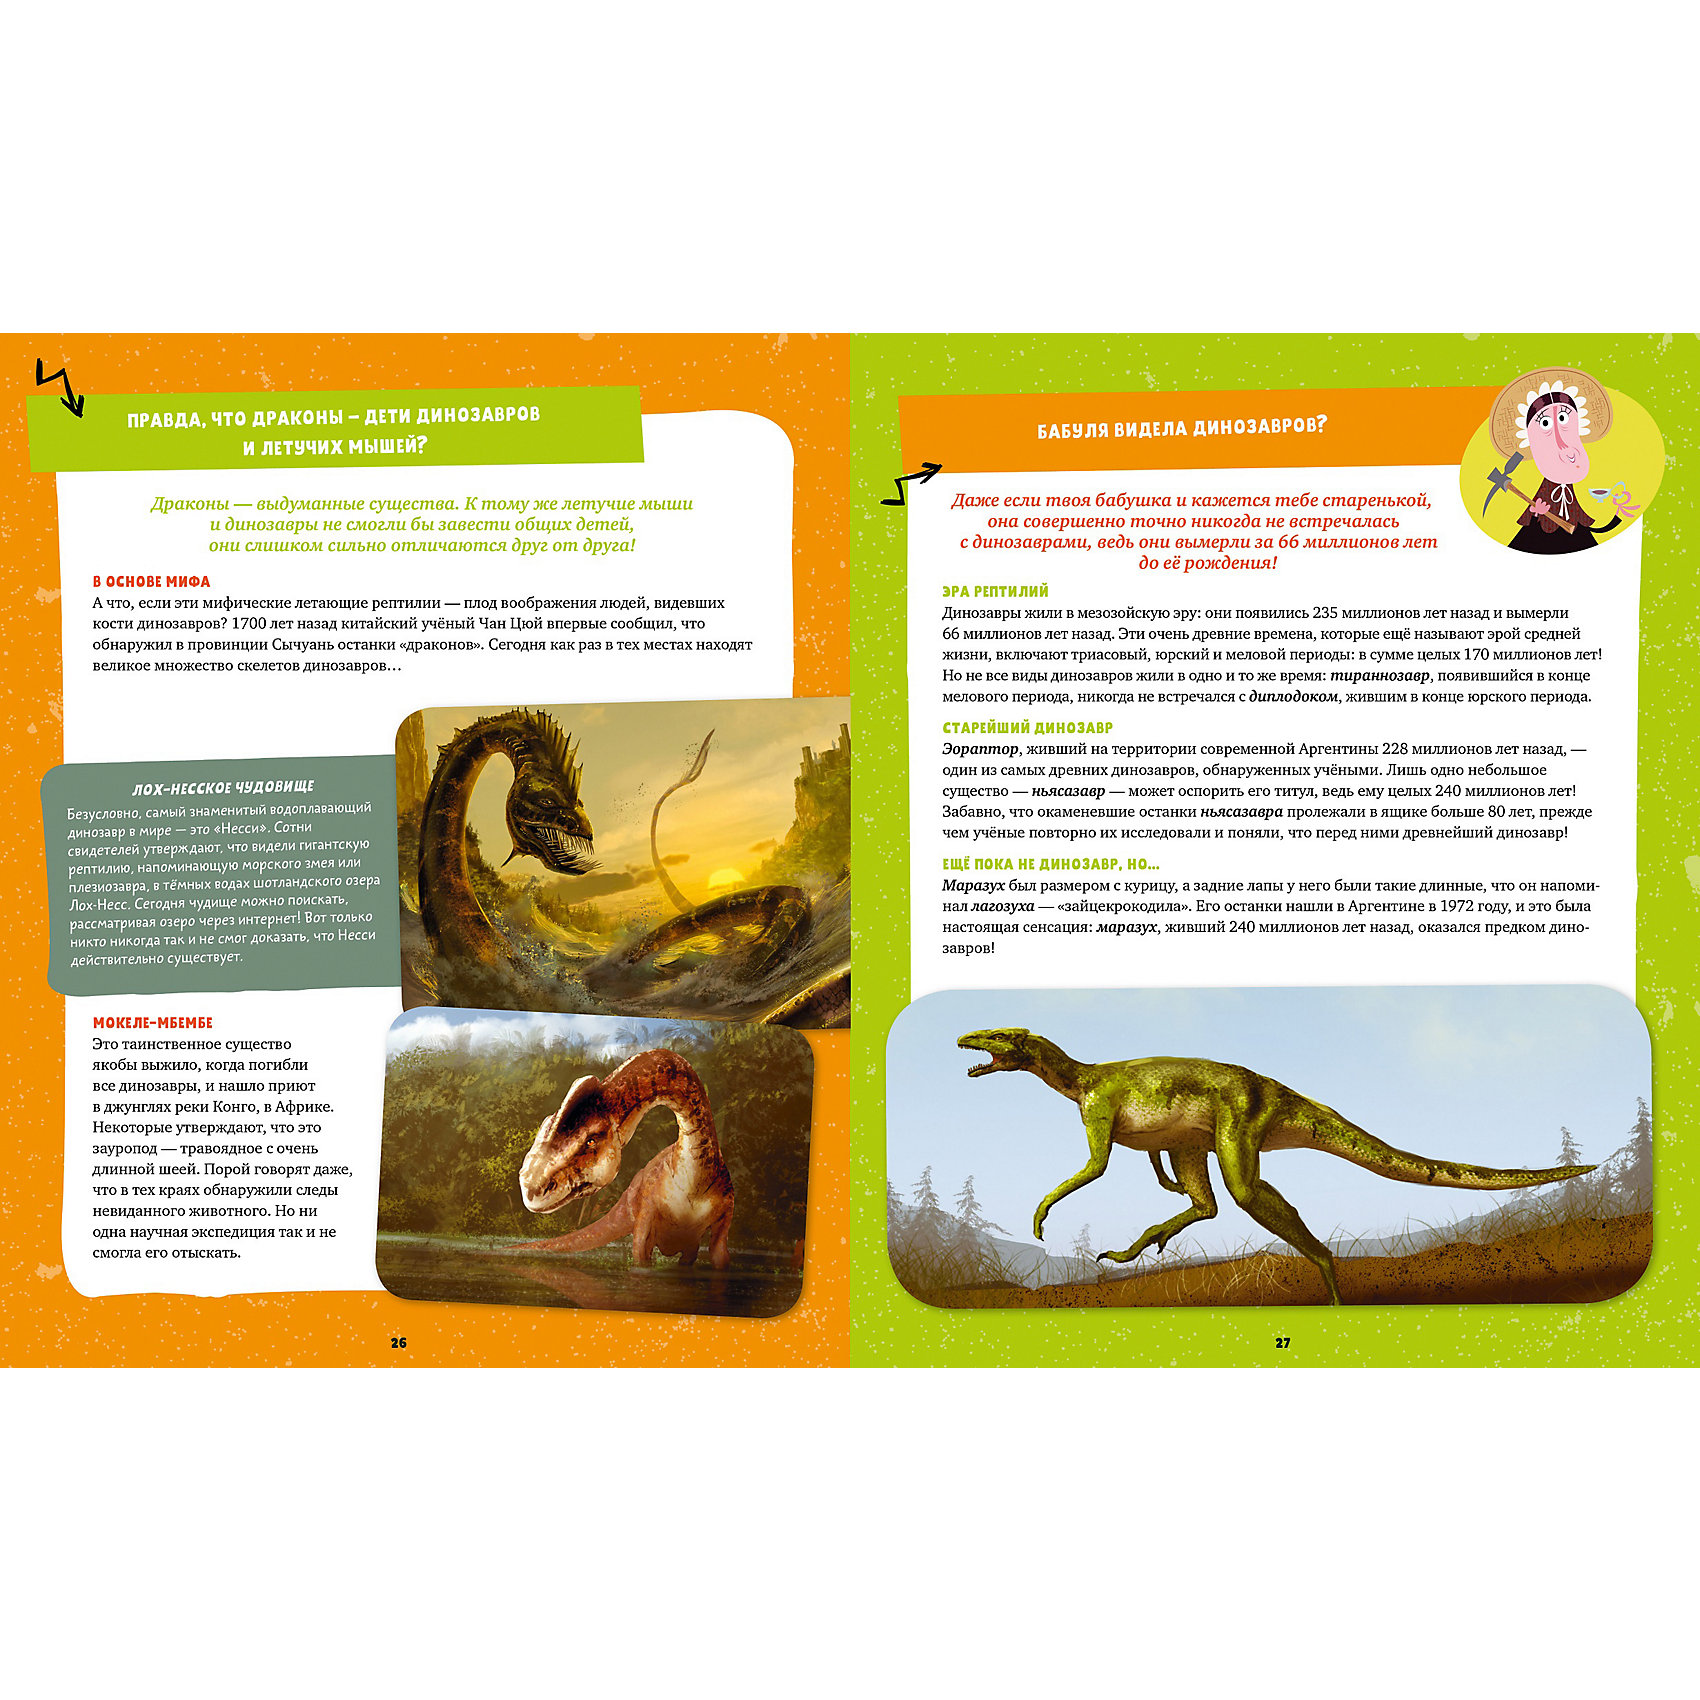 Вопросы динозавра. Вопросы про динозавров. Вопросы про динозавров для детей 6-7 лет. Детские вопросы про динозавров. Моя первая книга. Динозавры.